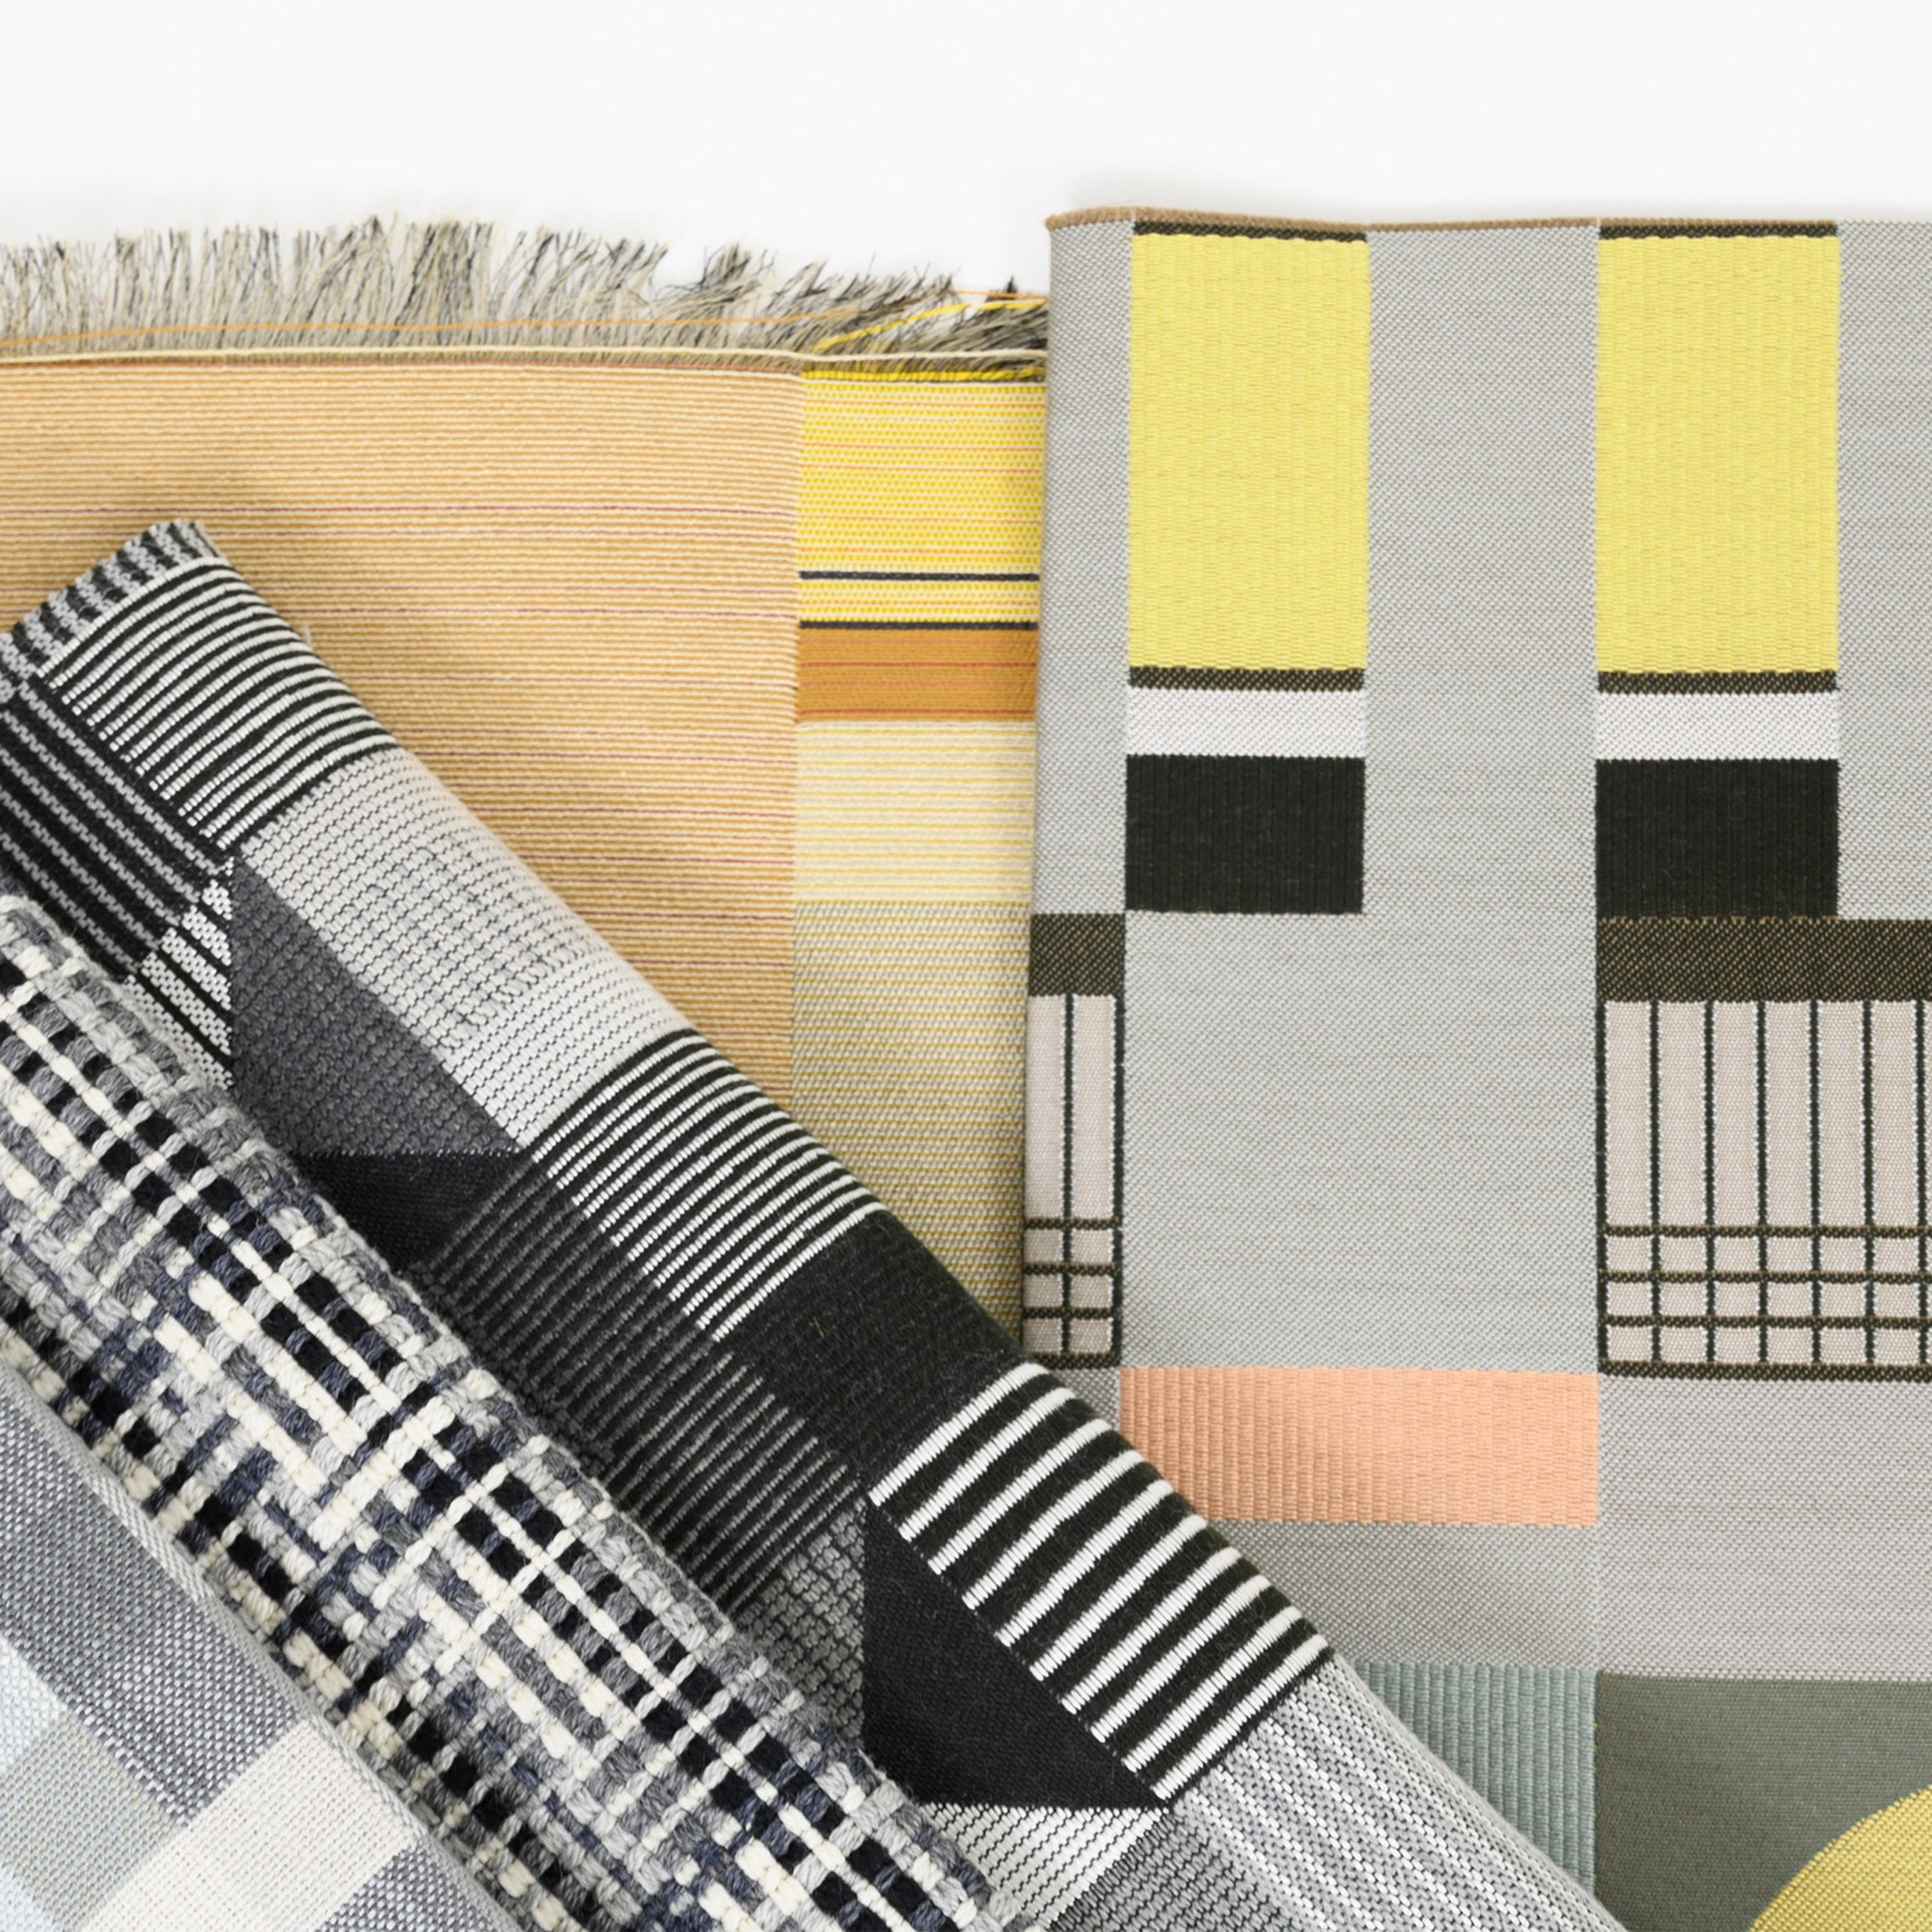 10 Bauhaus gifts: The Bauhaus Project by Designtex